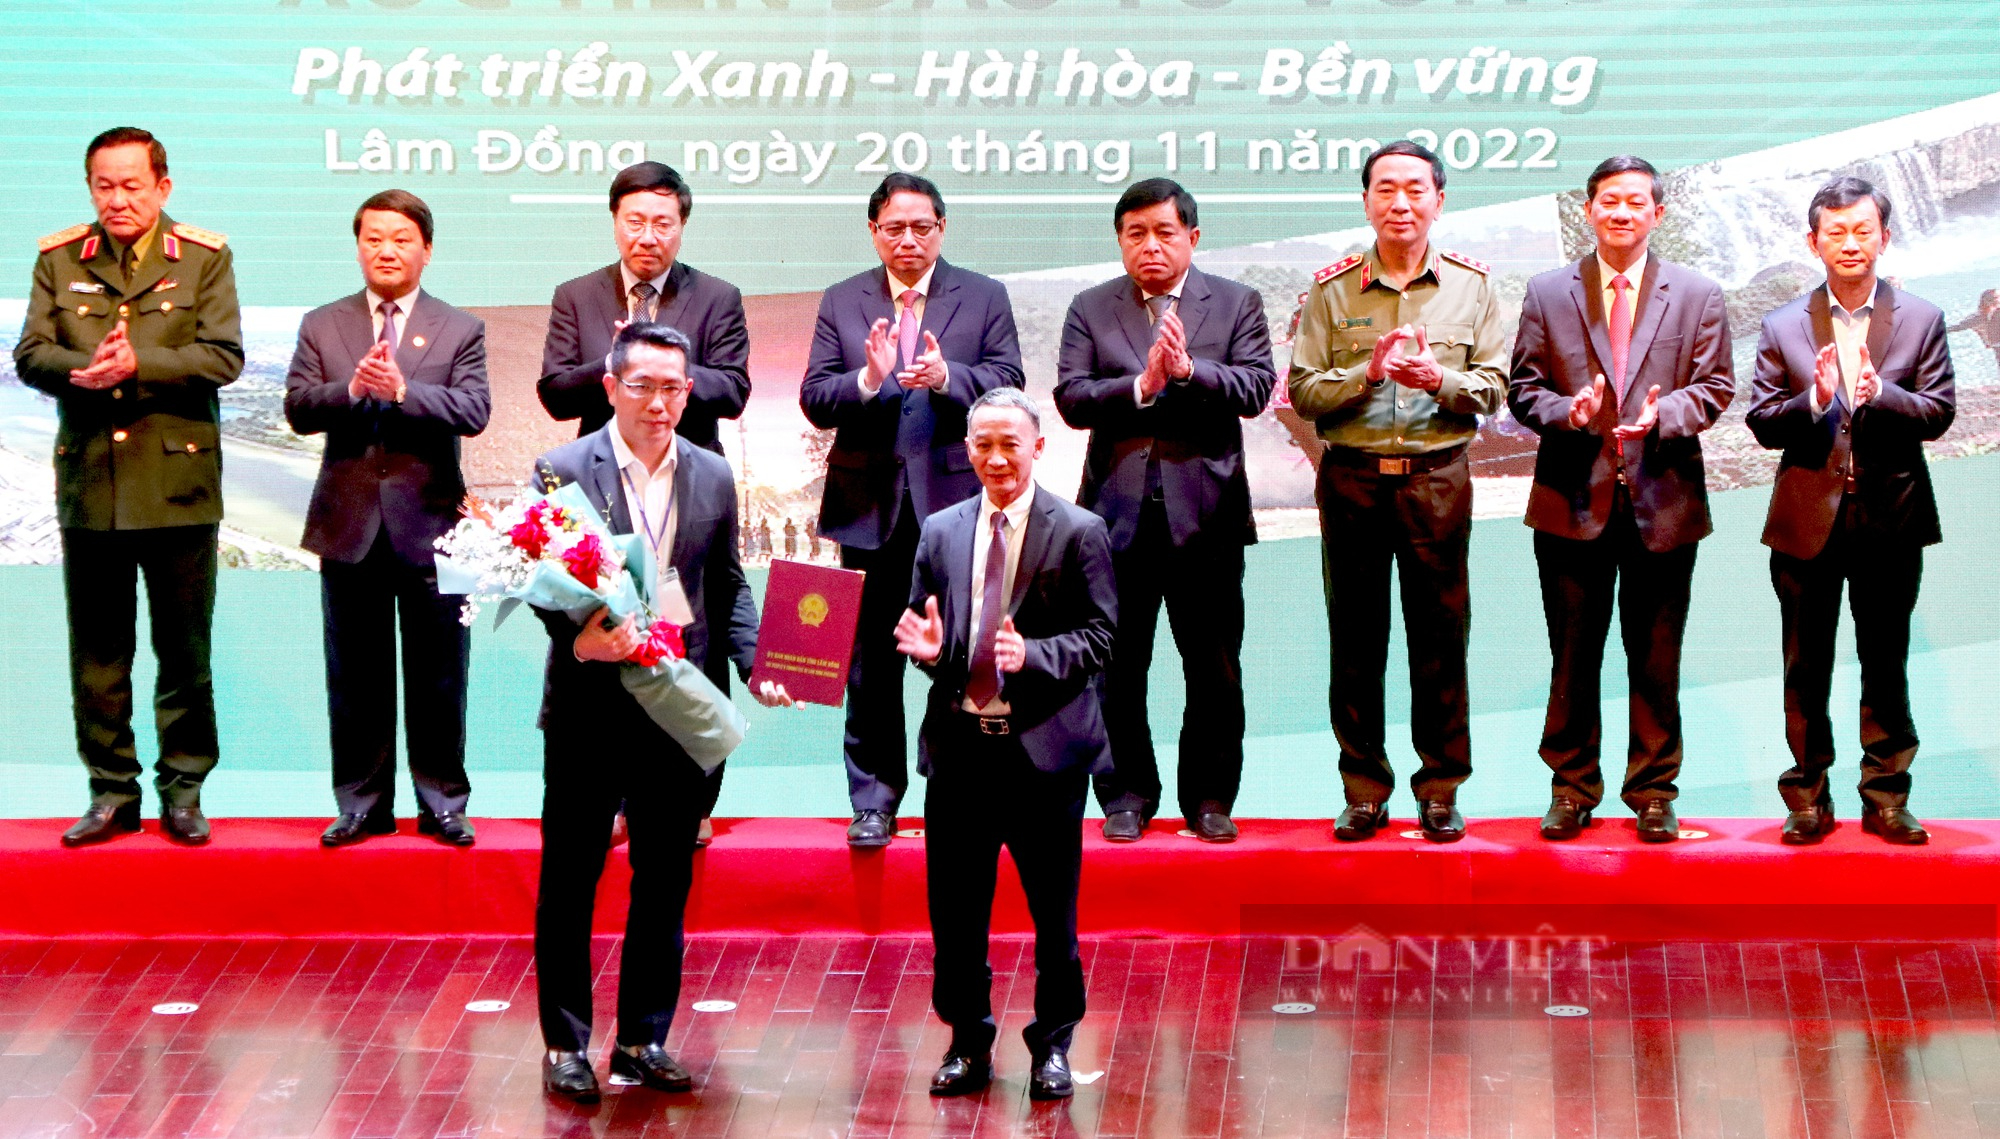 Thủ tướng Phạm Minh Chính: Phát triển Tây Nguyên “đột phá, bao trùm, toàn diện và bền vững” - Ảnh 6.